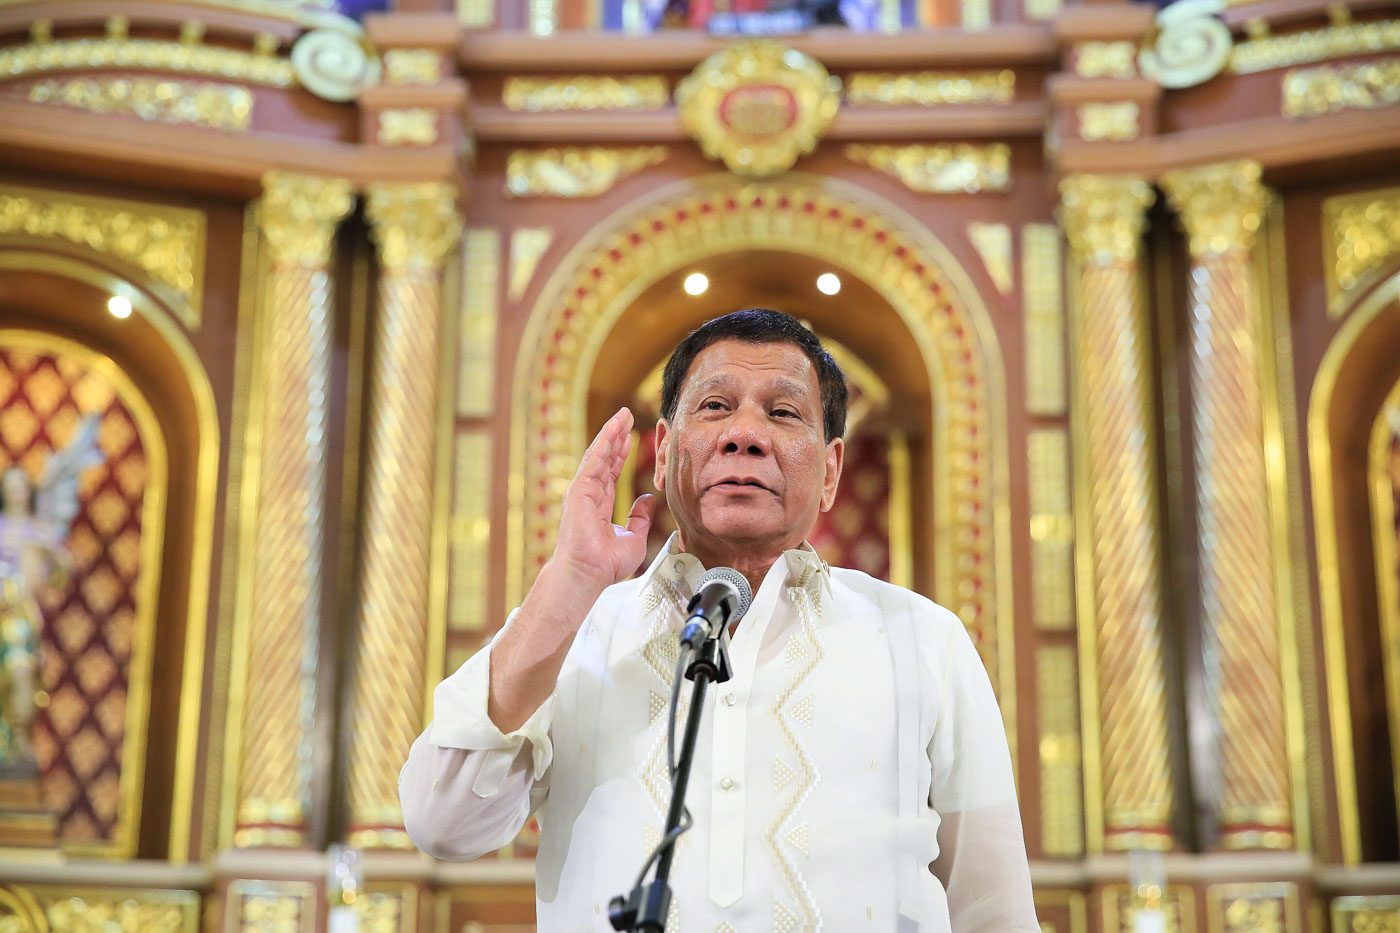 Duterte’s constant musings on death, resignation